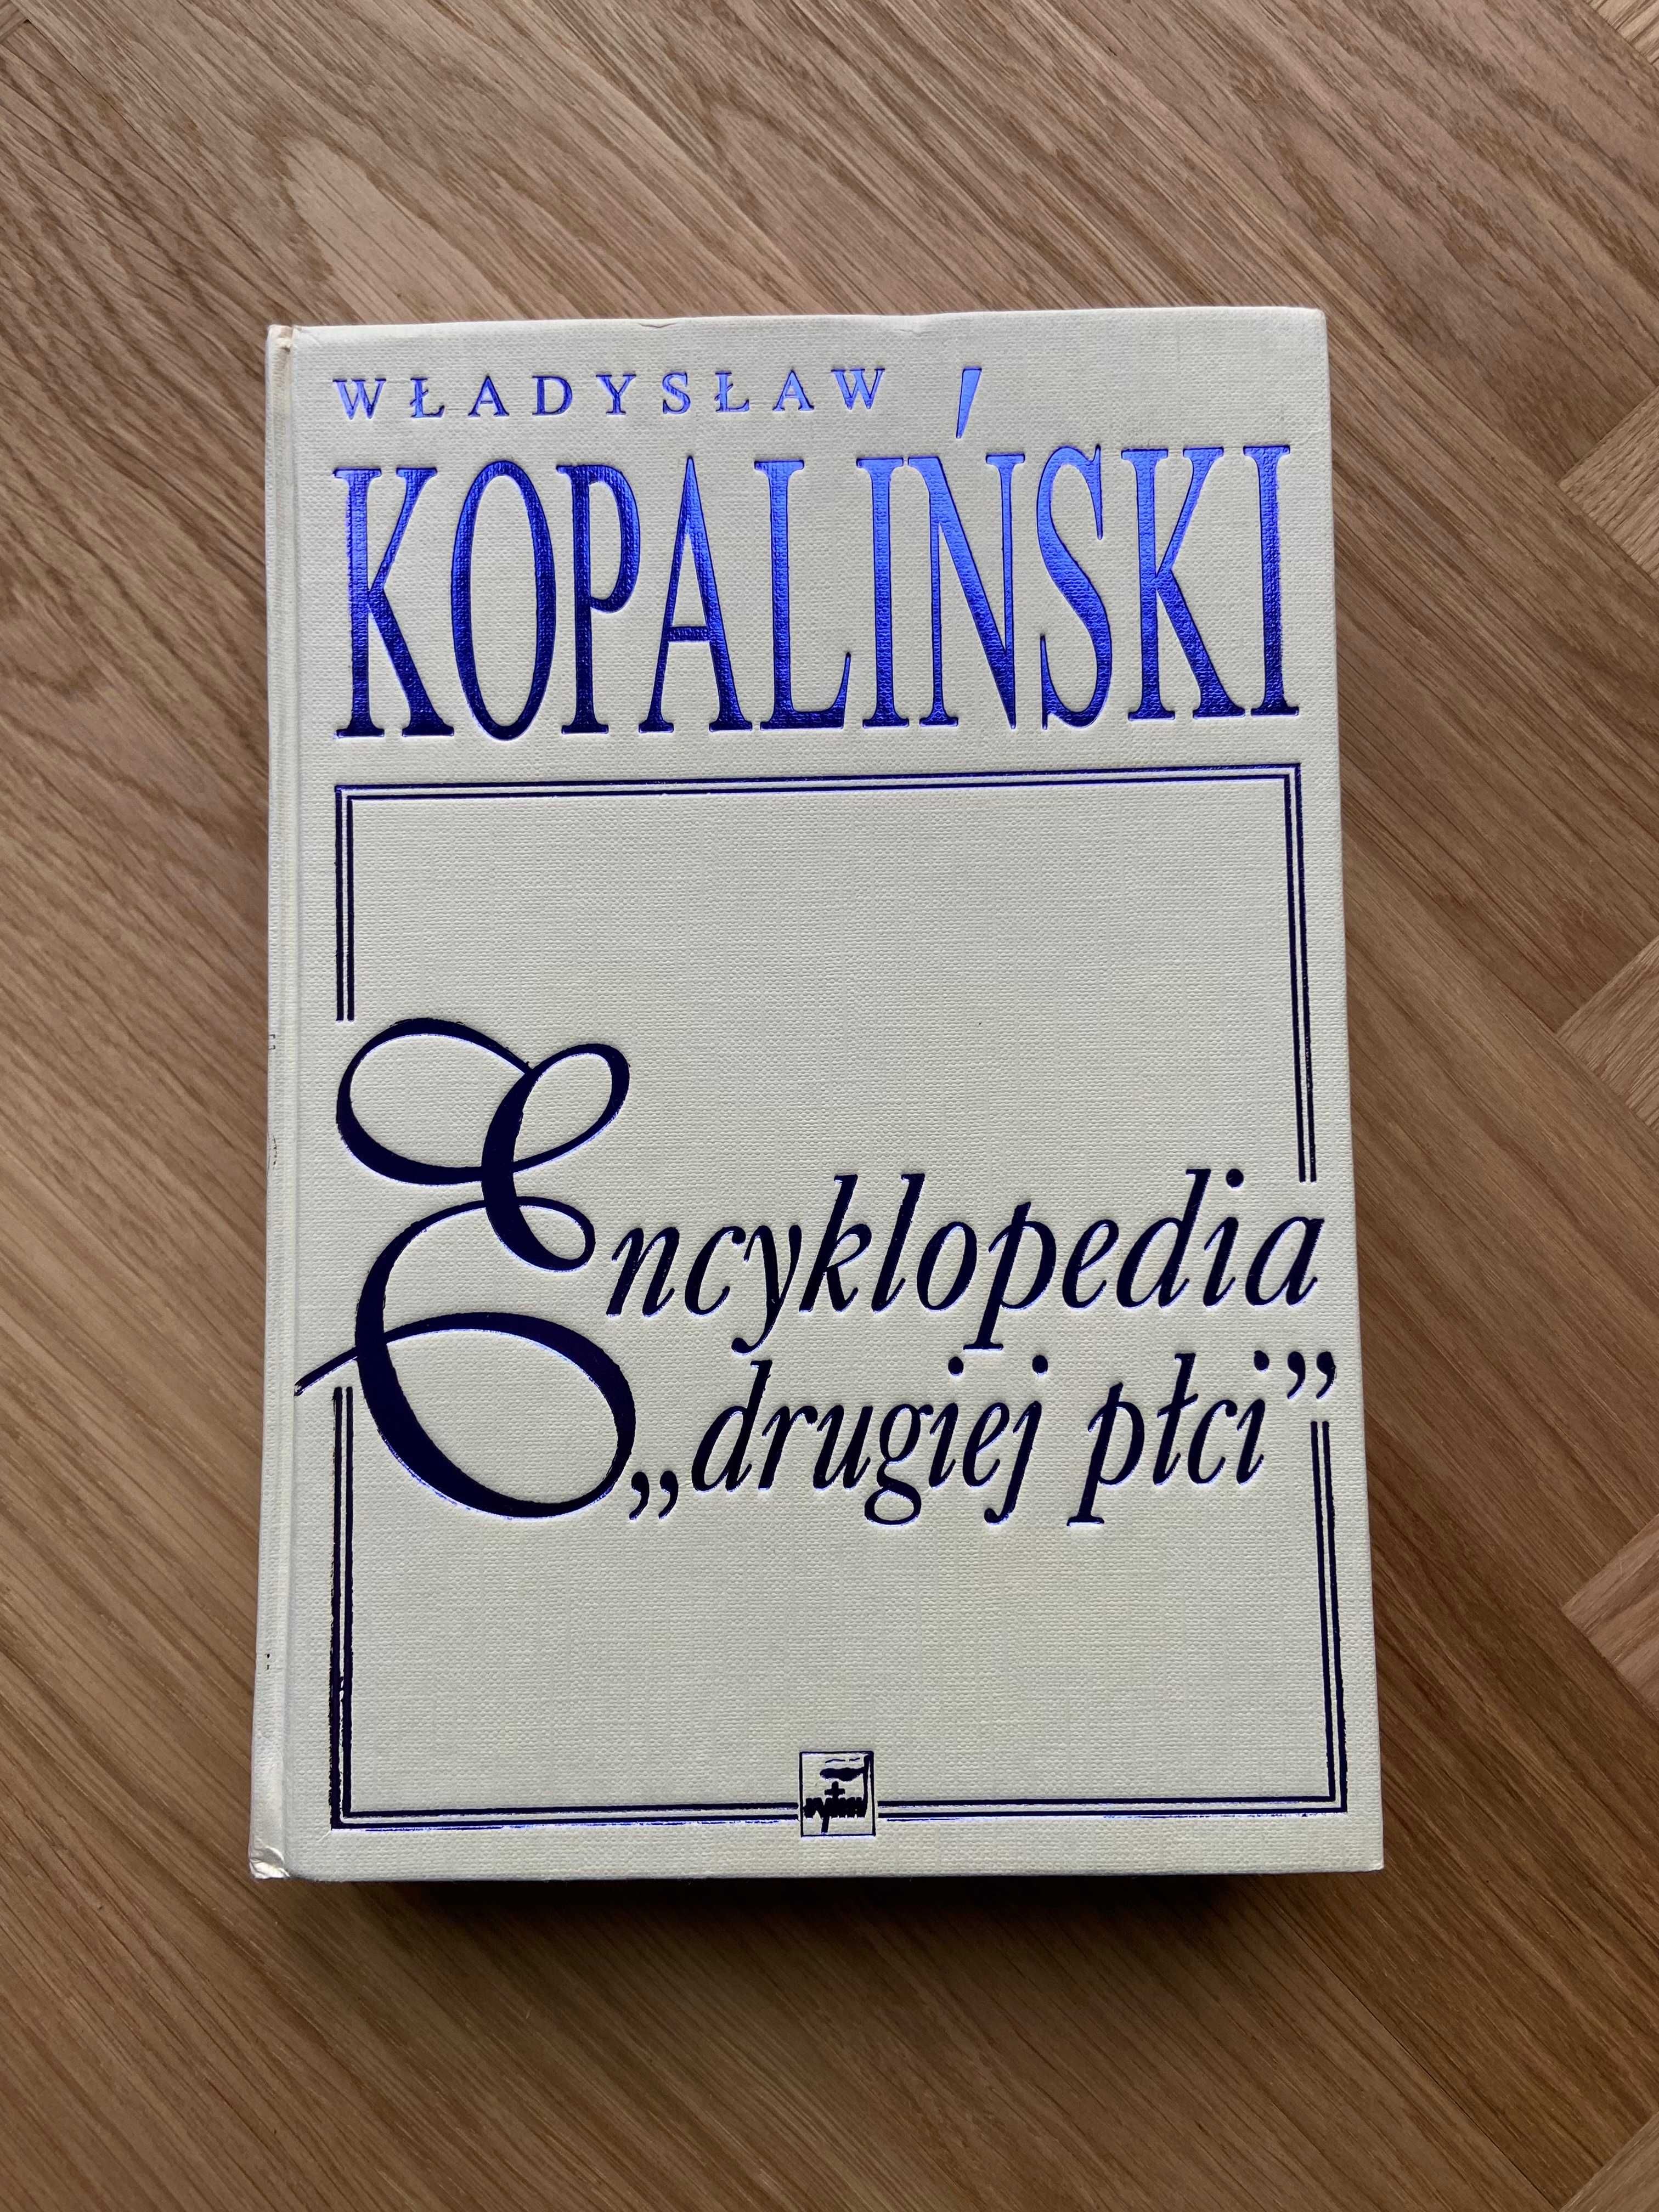 Kopaliński Władysław, Encyklopedia drugiej płci, książka 2001